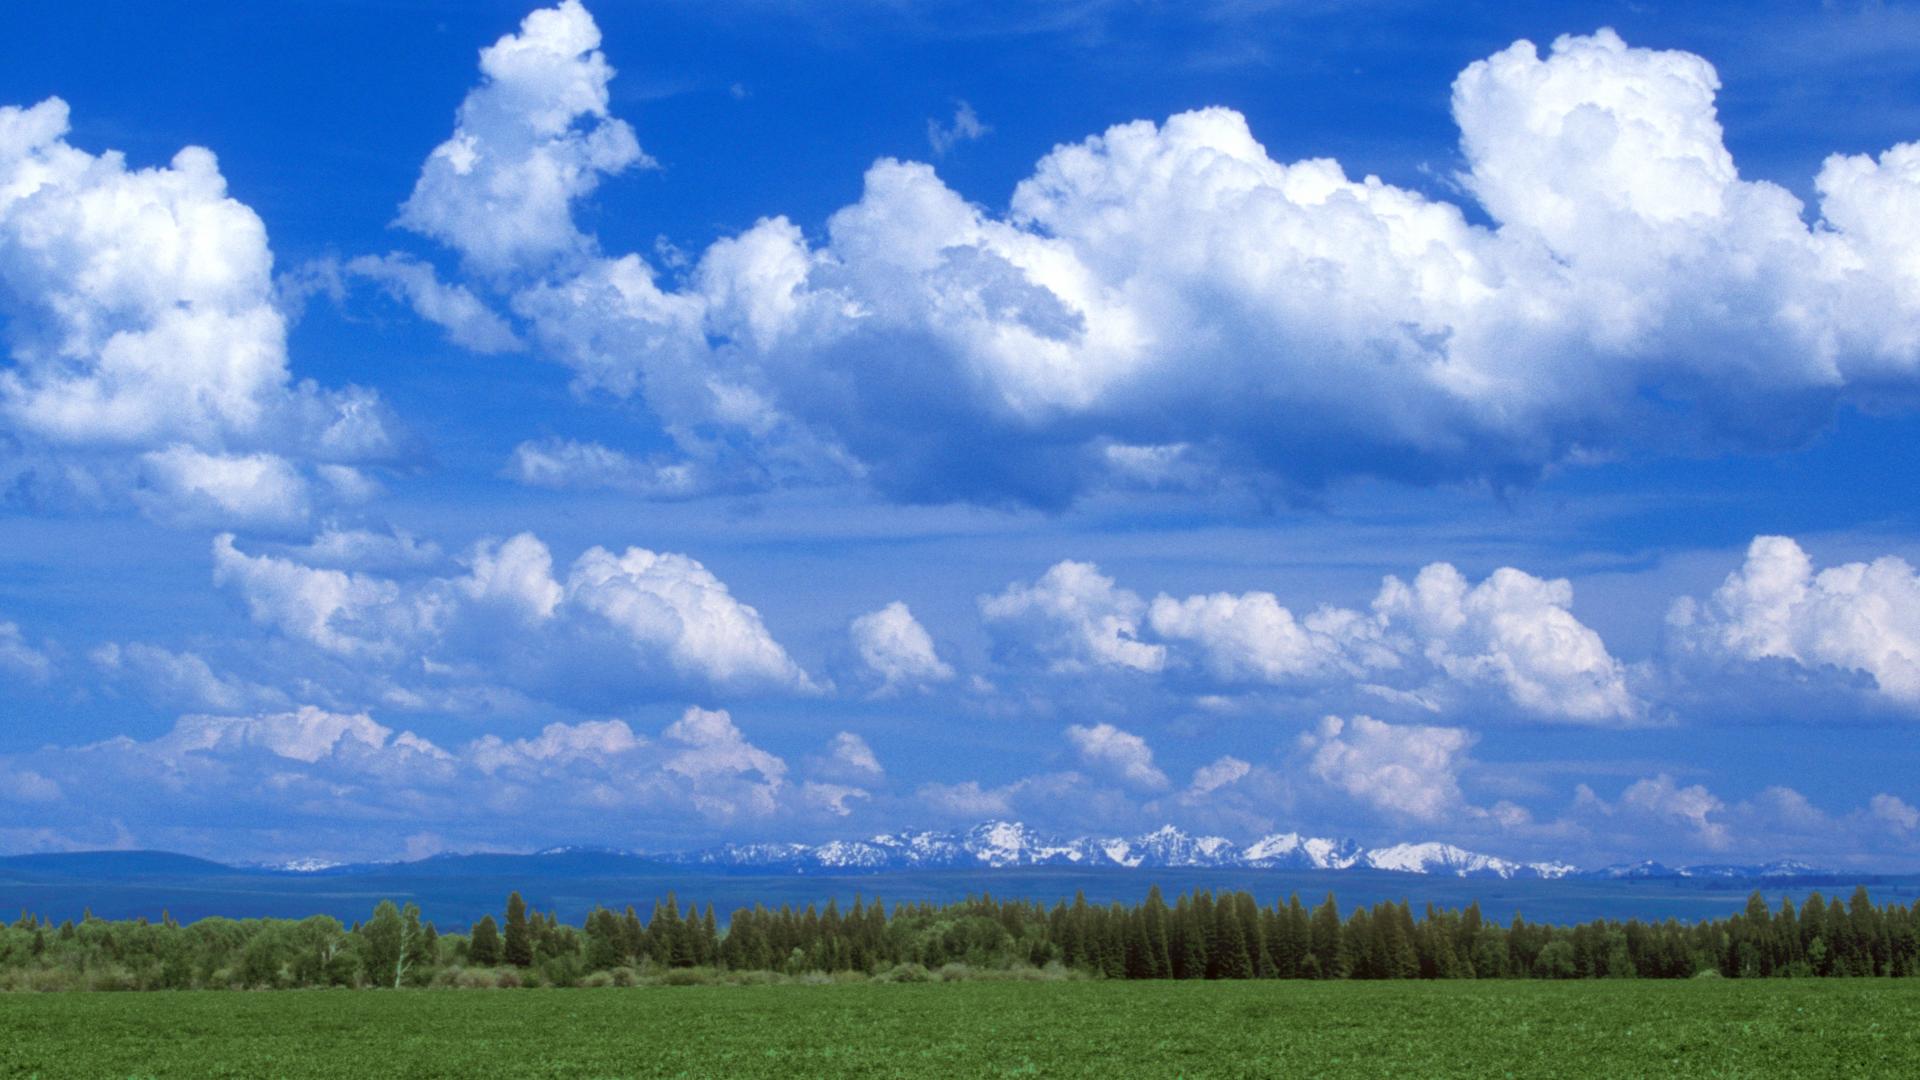 Hãy cùng chiêm ngưỡng những hình nền bầu trời đầy mây - một biểu tượng của sự đa dạng và tính độc đáo của thiên nhiên. Hình ảnh của những đám mây dày đặc, trôi lững lờ trên bầu trời tạo ra một cảm giác vô cùng thơ mộng và đầy sức sống. Hãy tận hưởng cảm giác nhẹ nhàng của mây trắng qua hình nền bầu trời đầy mây.